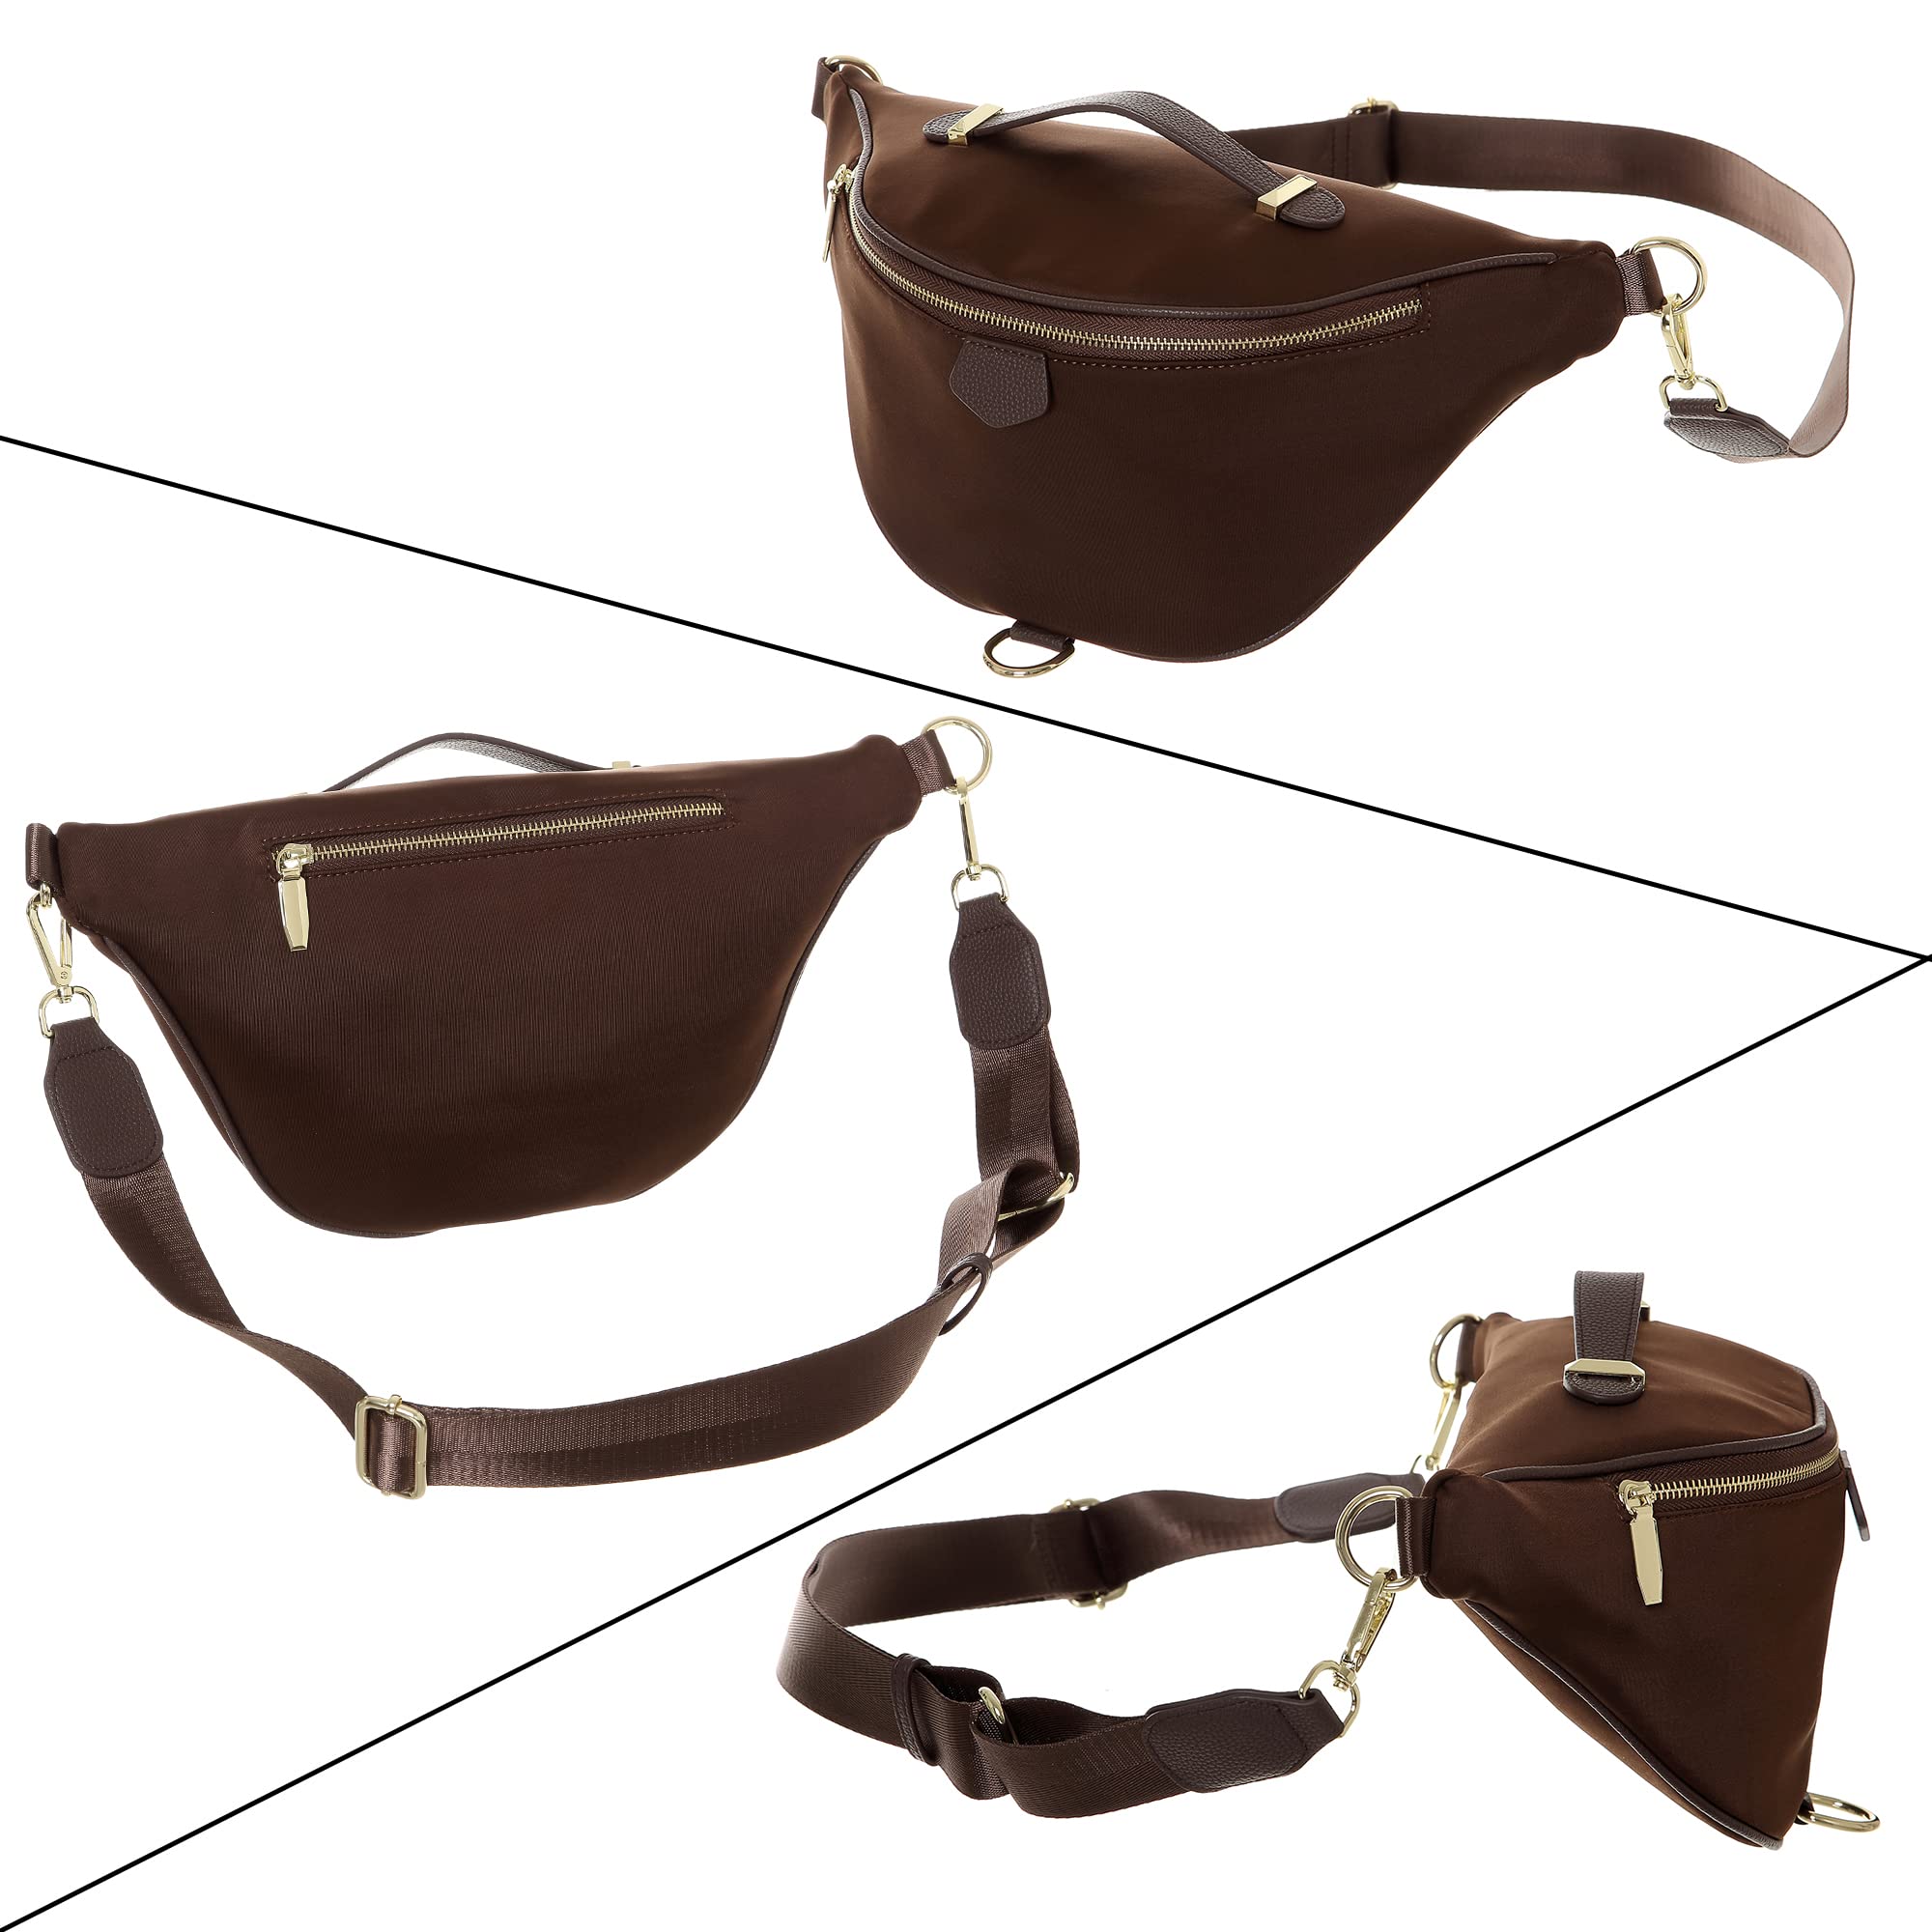 INICAT Fanny Packs for Women Fashionable Waist Packs Belt Bags Unisex Cross Body Bag for Travel Hiking(G-Black)